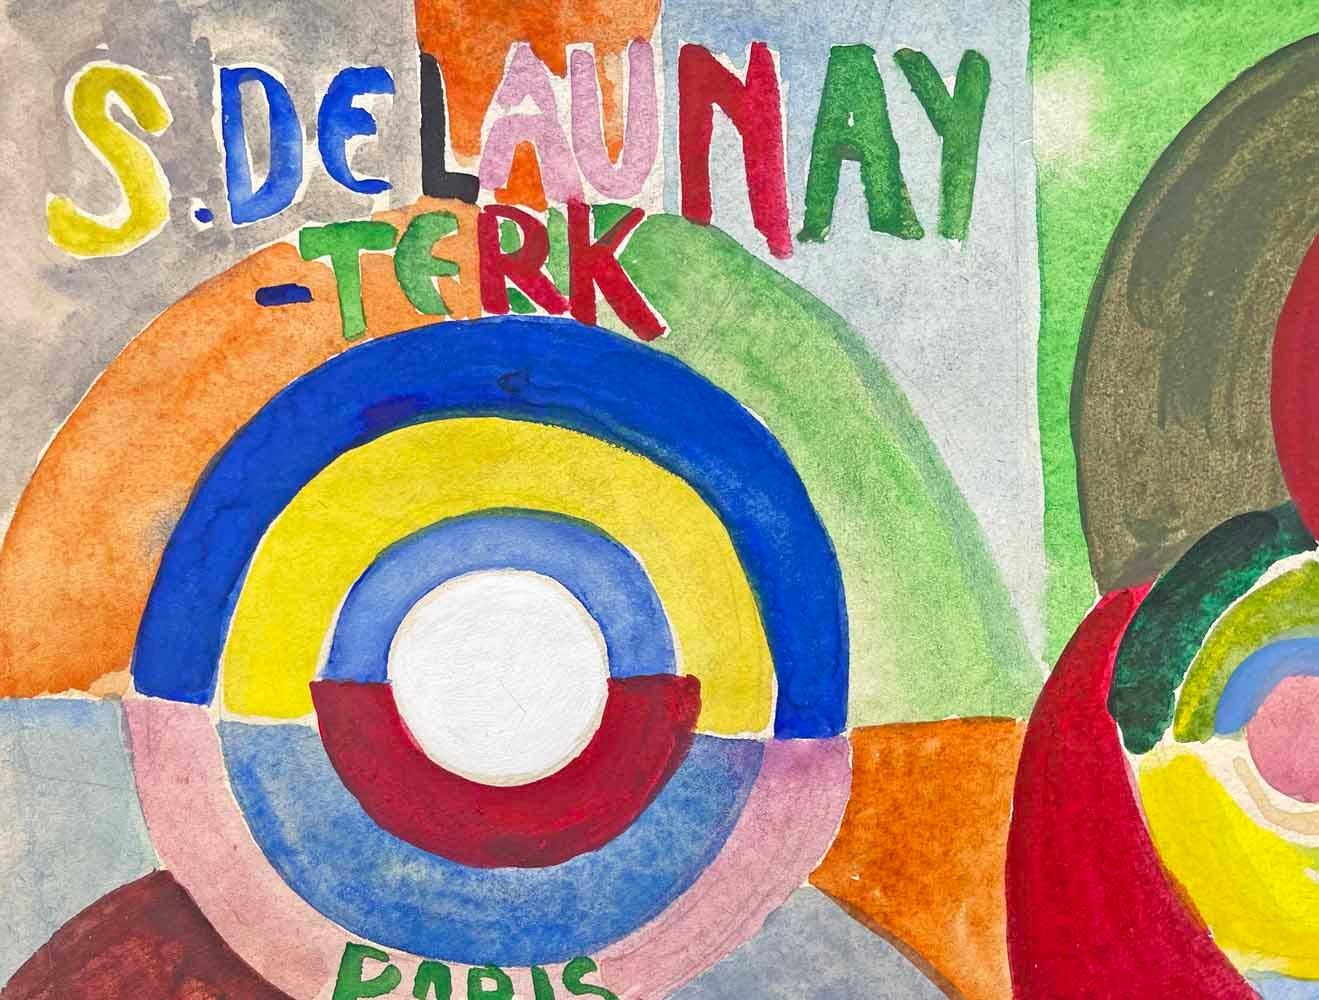 Cette aquarelle aux couleurs vives est un exemple remarquable des débuts de l'art abstrait qui démontre la fascination de Sonia et Robert Delaunay pour la théorie des couleurs et les géométries qui se croisent. Cette aquarelle était une maquette